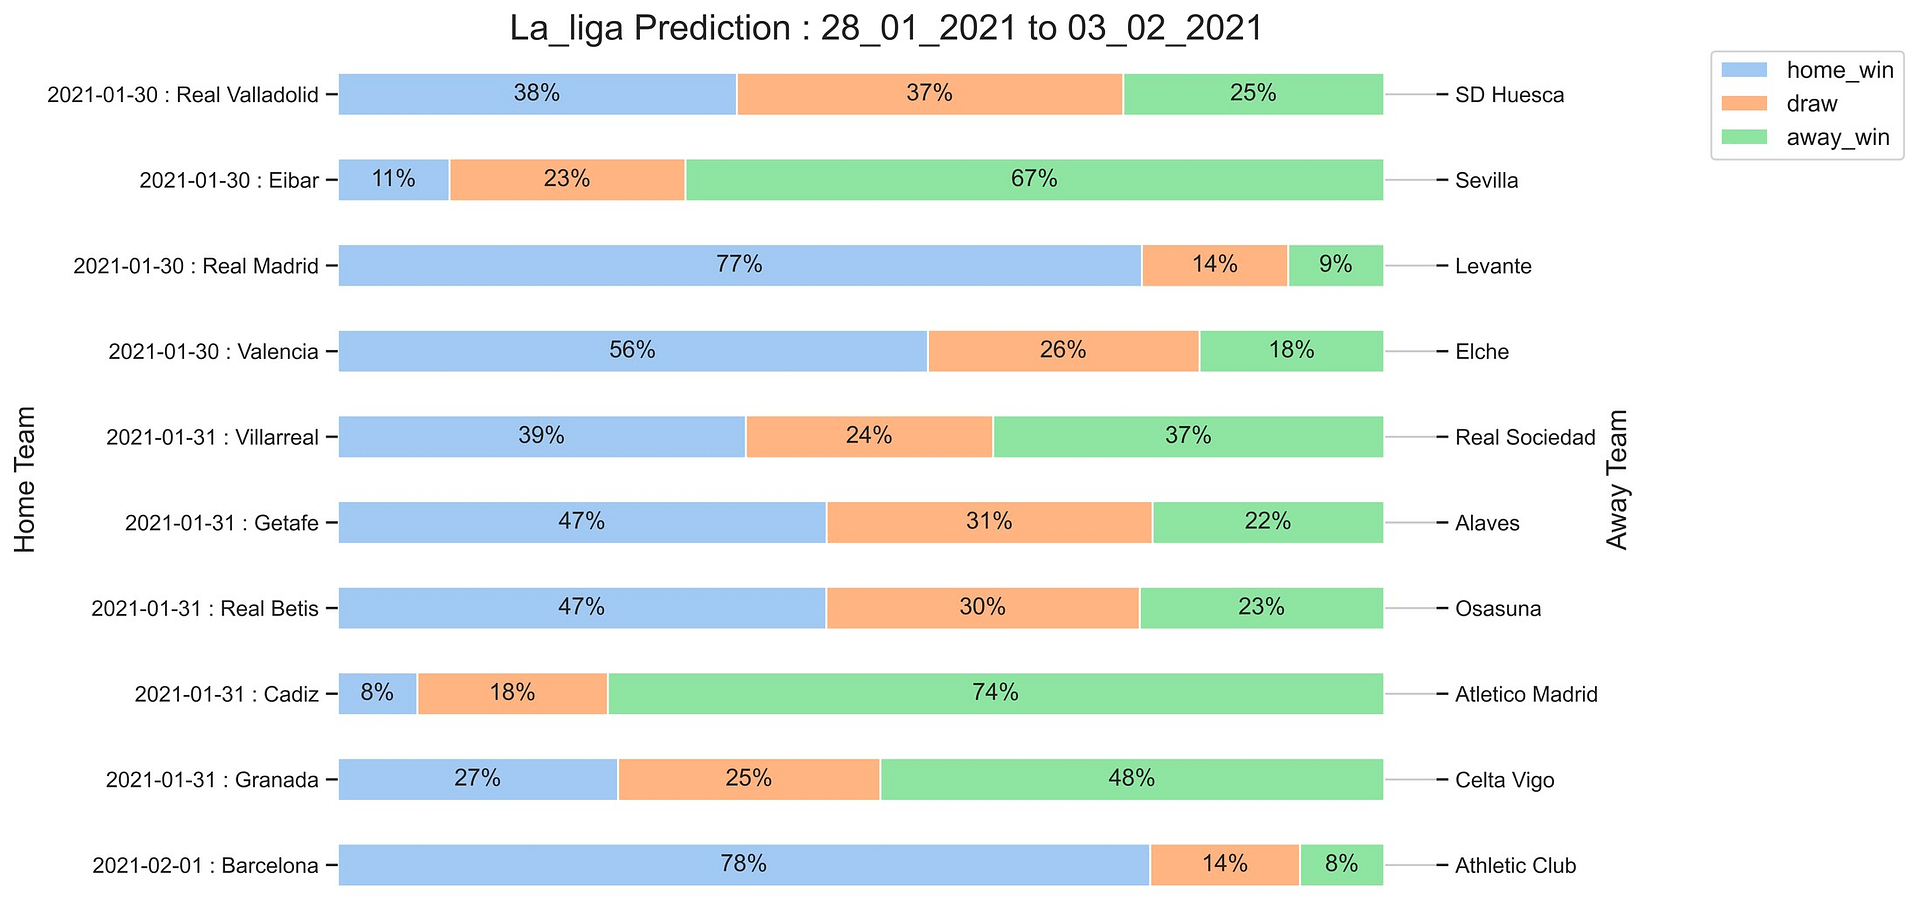 La_Liga_Prediction 28_01_2021